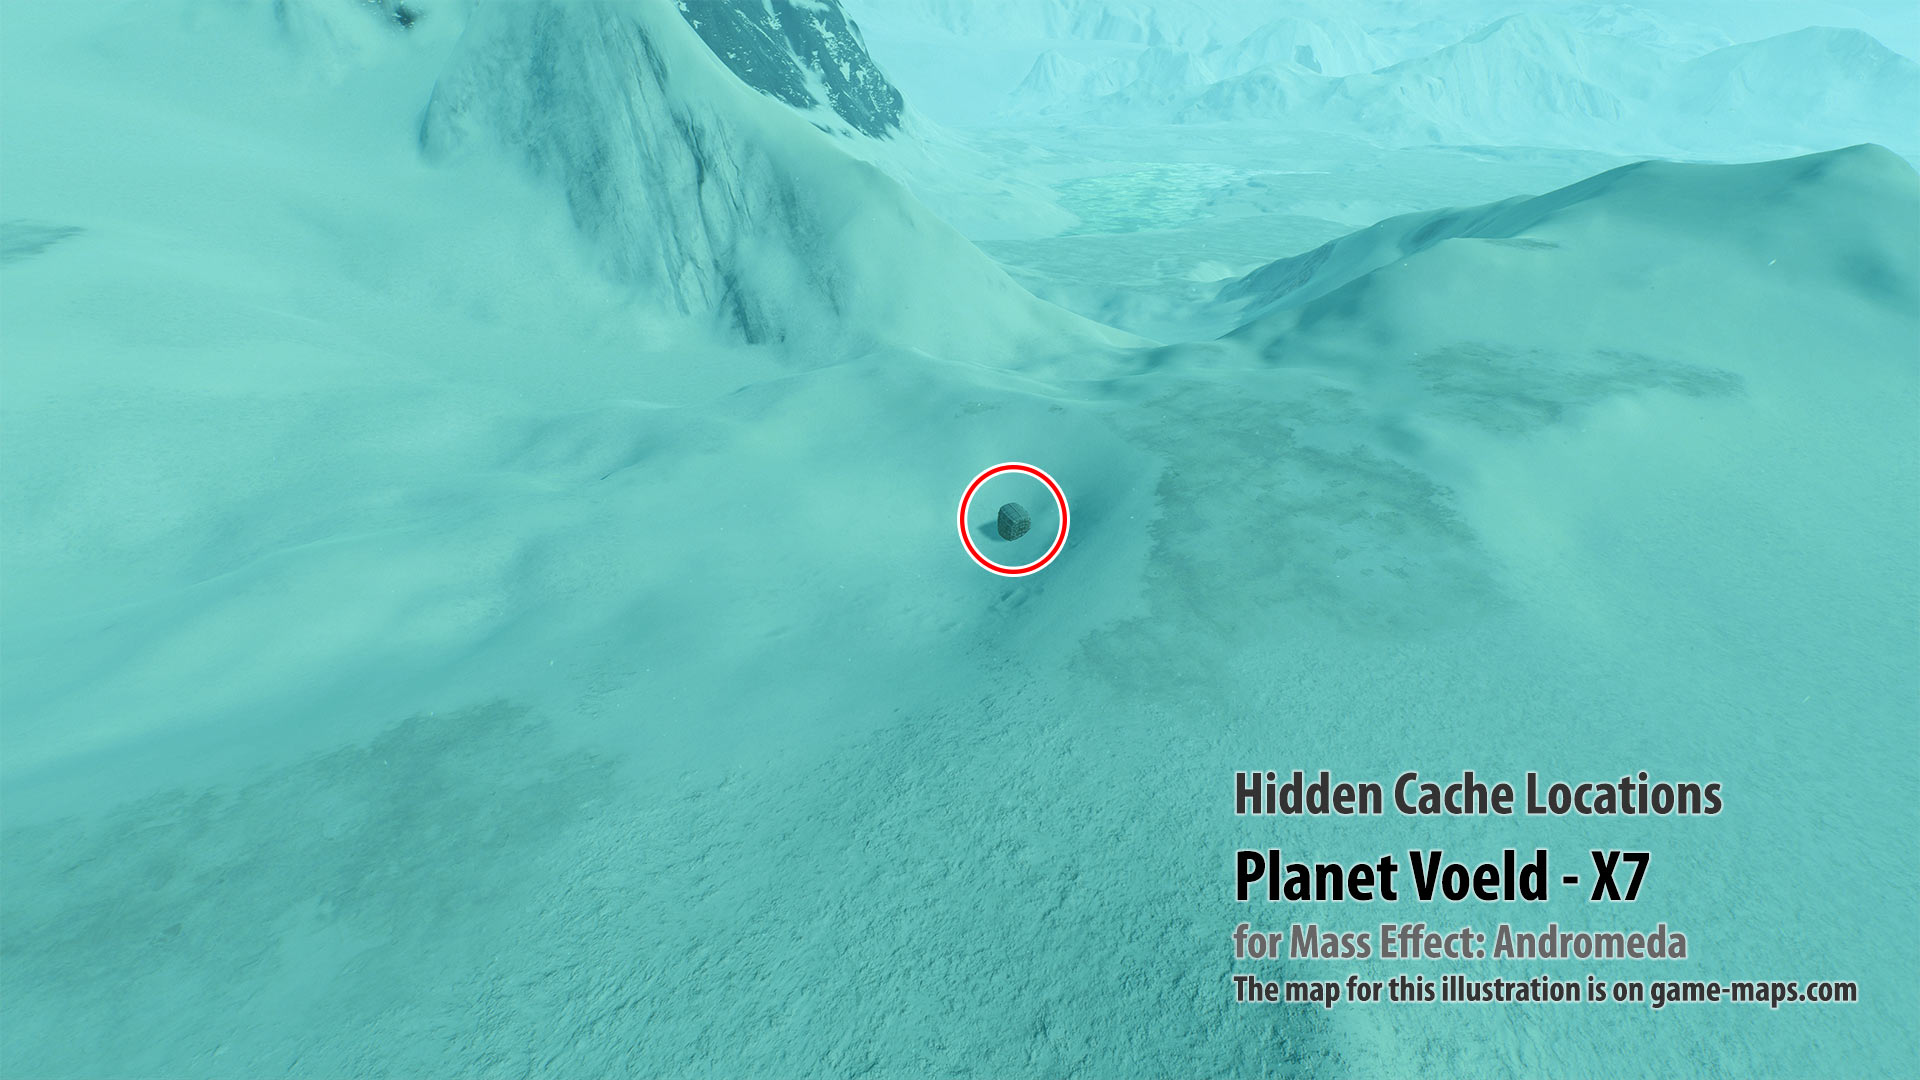 Hidden Cache - Planet Voeld-X7 - Mass Effect Andromeda.